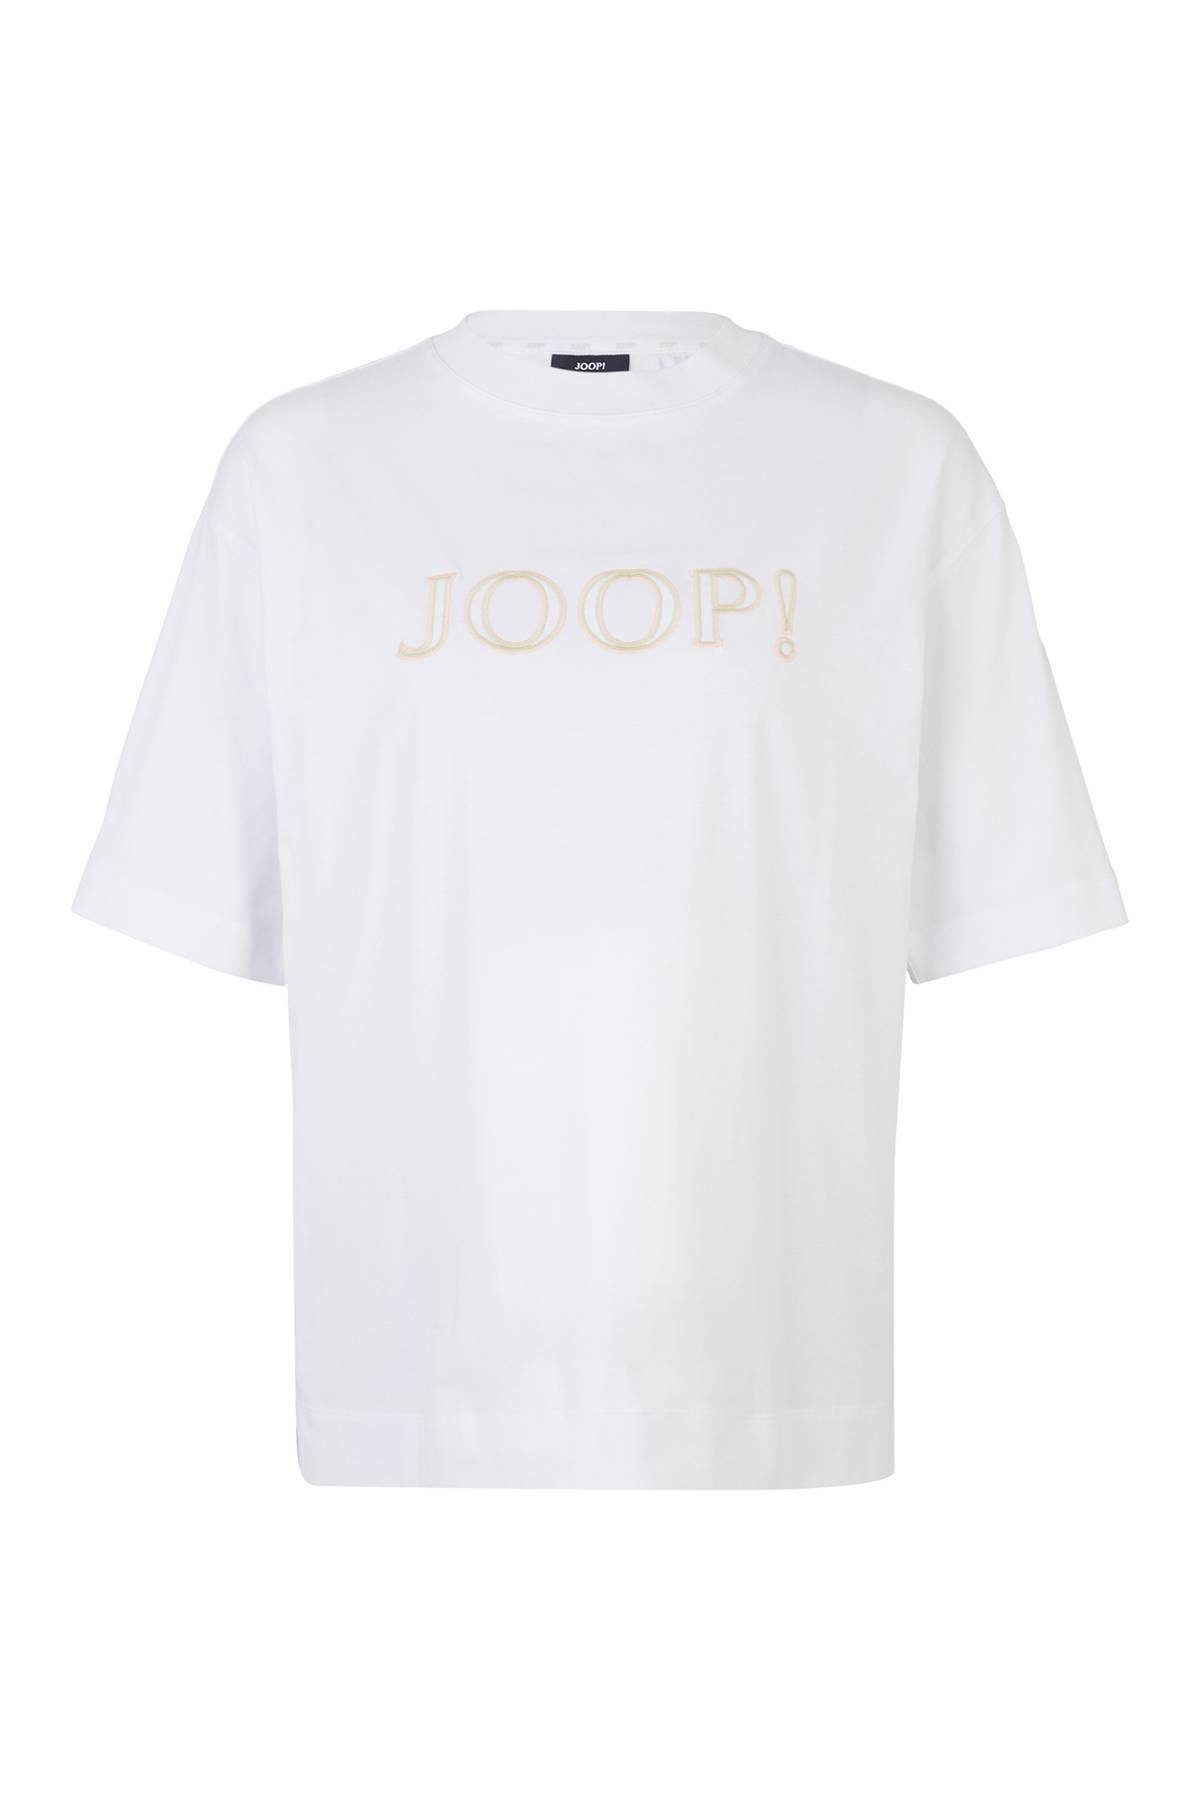 JOOP! T-Shirt Damen T-Shirt - Loungewear, Kurzarm, Rundhals